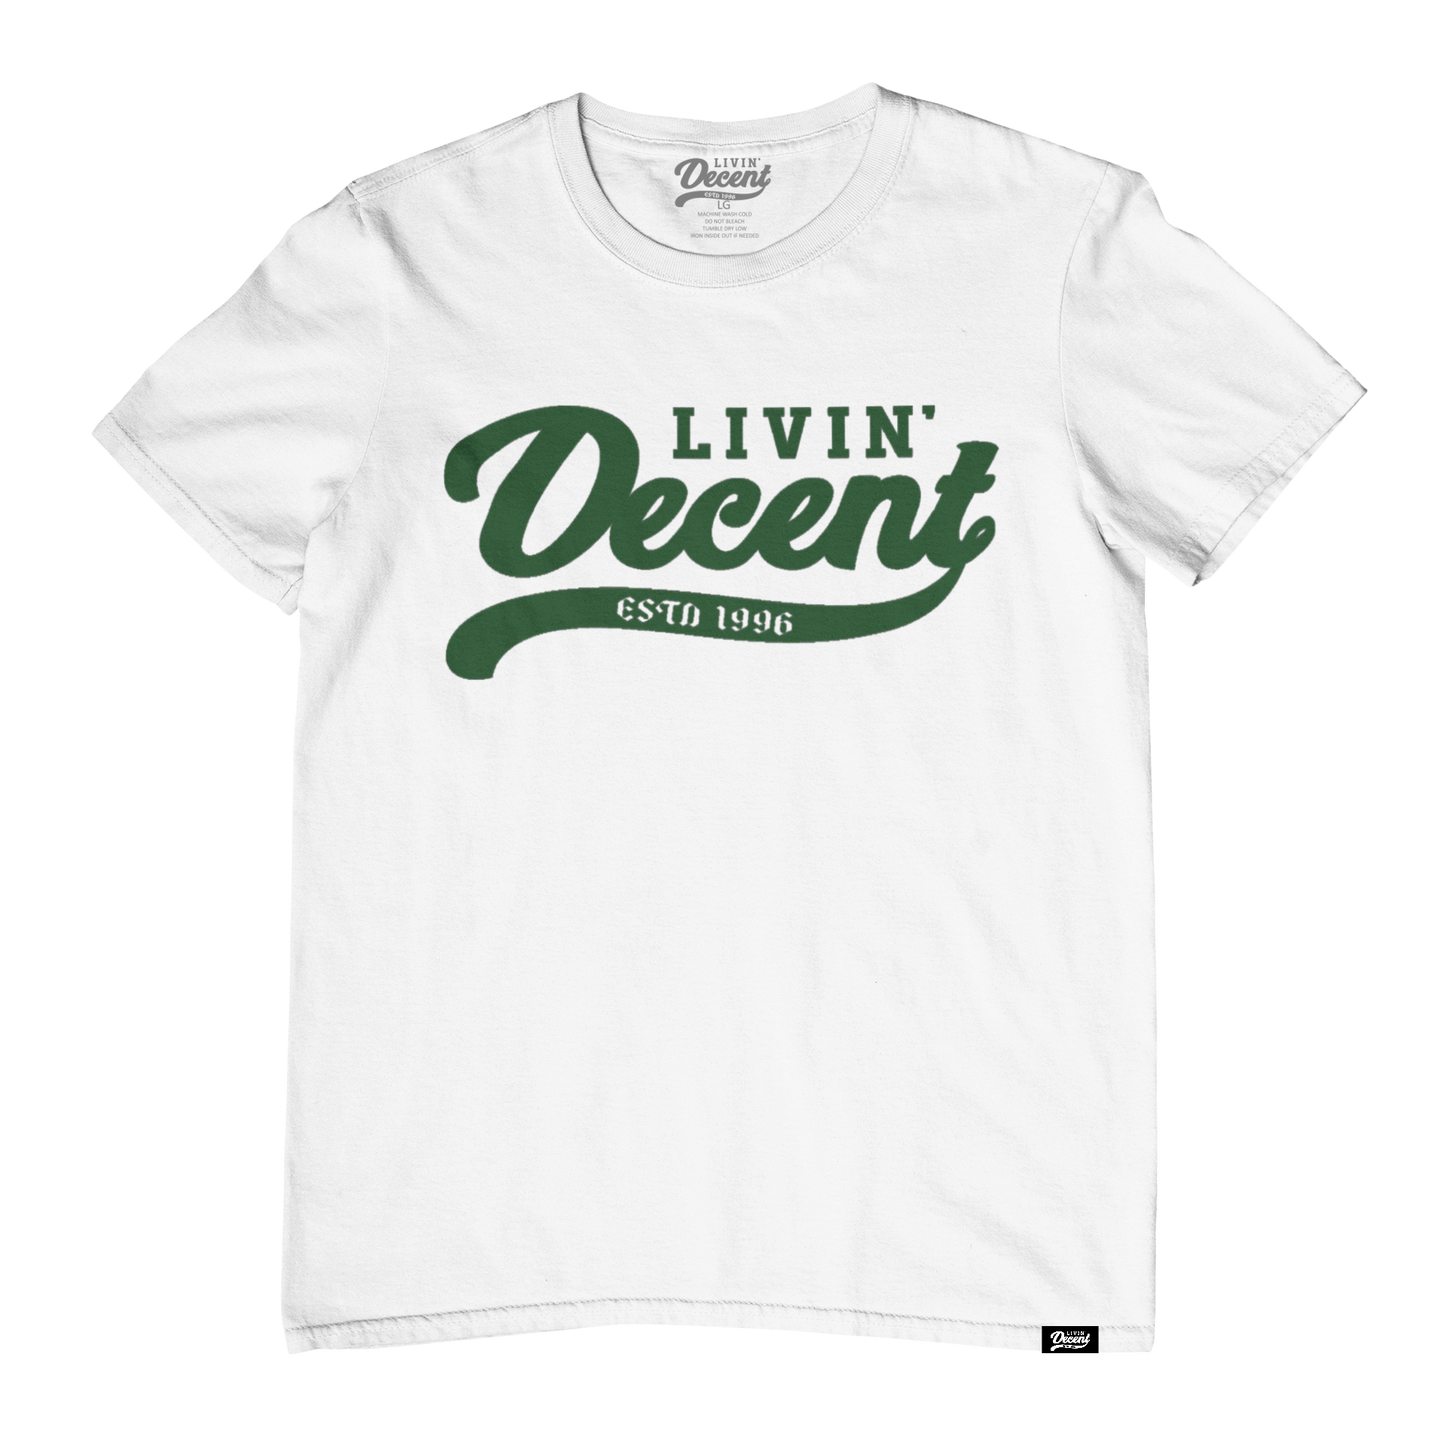 Livin Decent Original T-Shirt